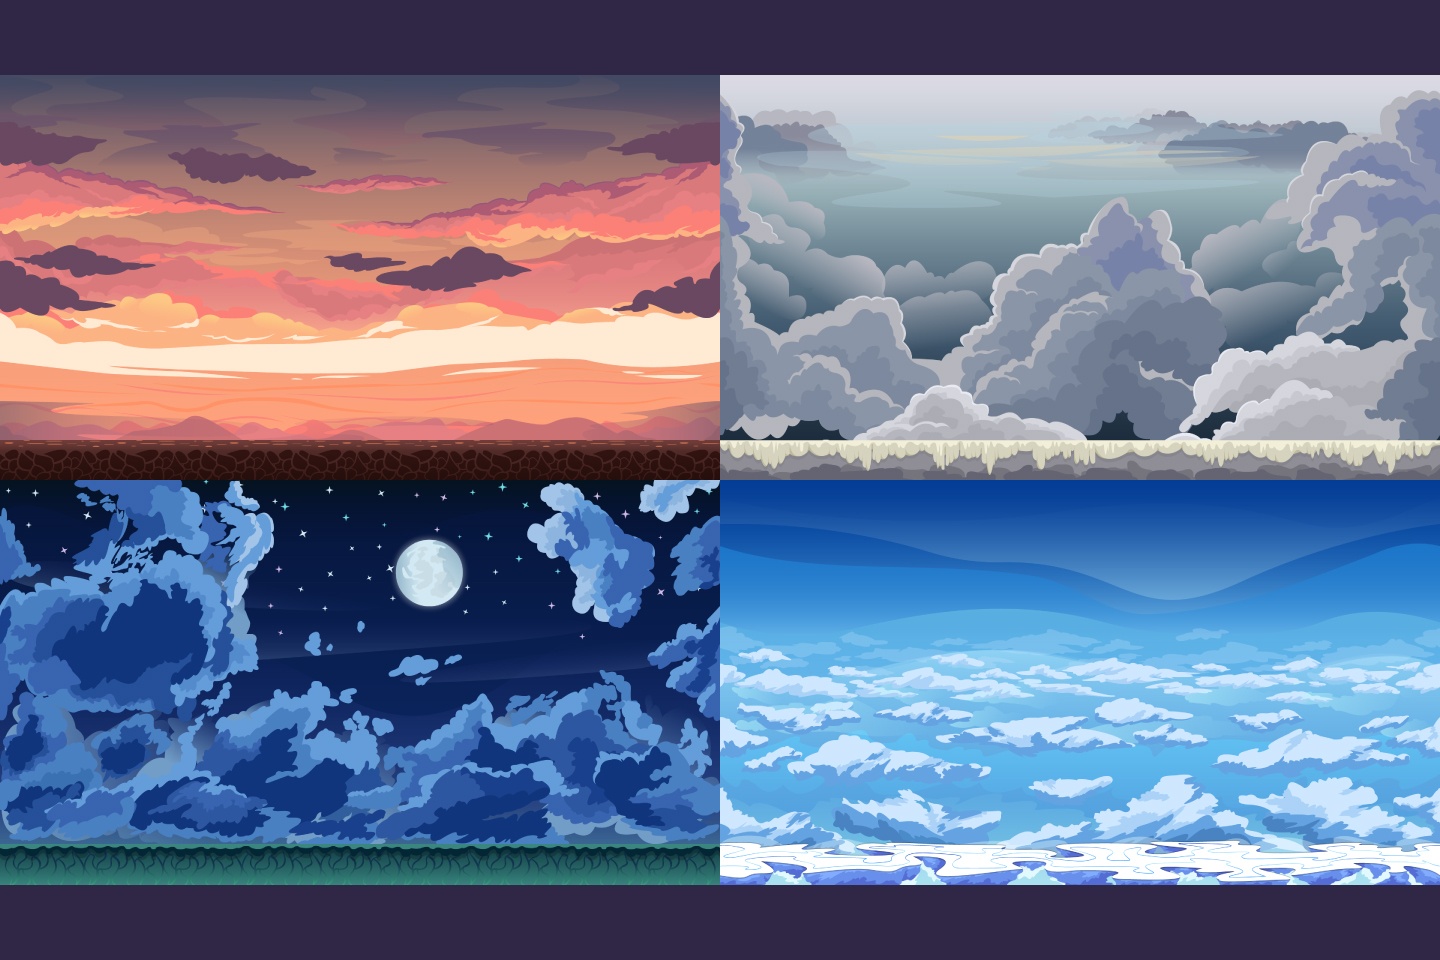 Mê hoặc với những hình nền Sky 2D Game Backgrounds đầy màu sắc và sinh động. Dùng cho game thì tuyệt vời, cho thiết kế web thì đảm bảo sự thu hút của khách hàng. Hãy chiêm ngưỡng và cảm nhận những cảm xúc tuyệt vời mà bức tranh này mang lại cho bạn.